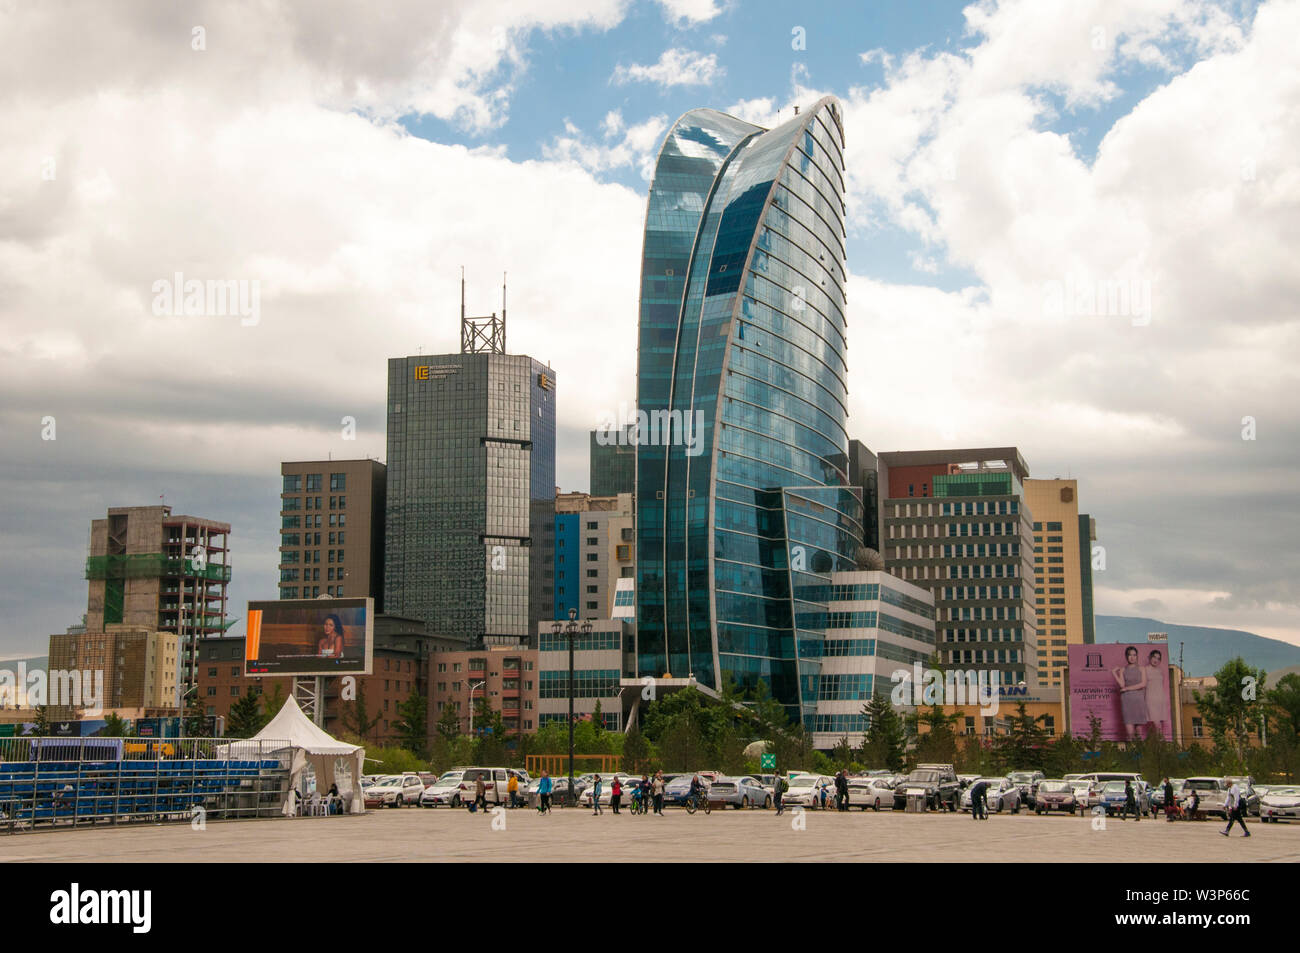 Ciel bleu bâtiment donnant sur Sukhbaatar Square, Ulaanbaatar, Mongolie Banque D'Images